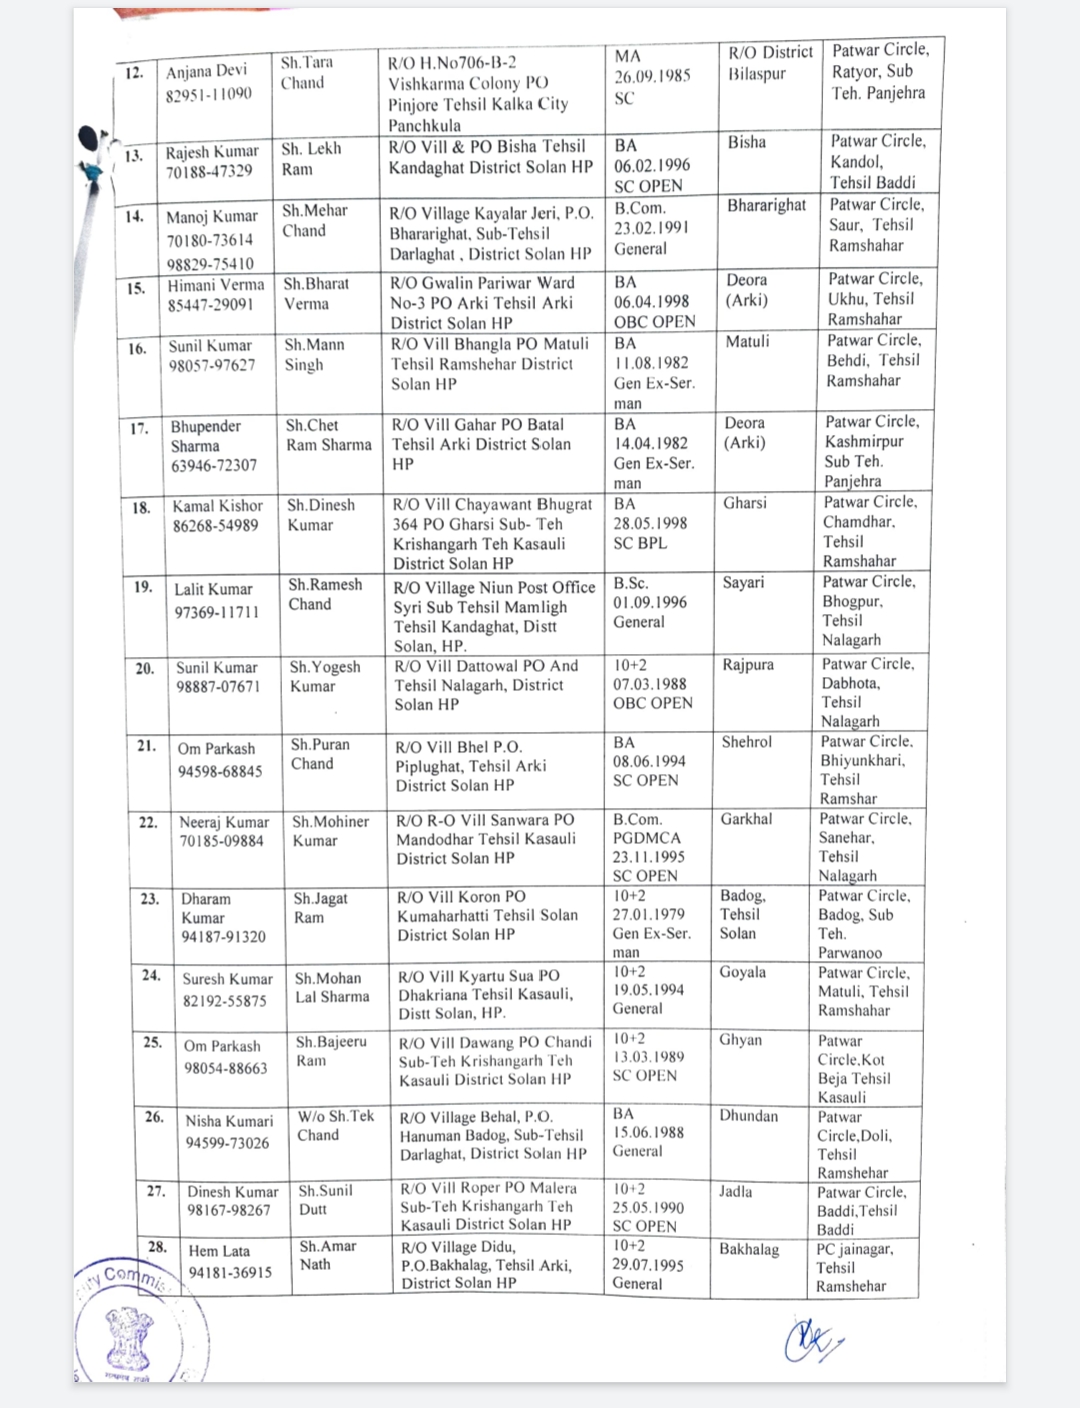 सोलन जिला के 39 पटवारखानों में नए पटवारीयों की नियुक्ति